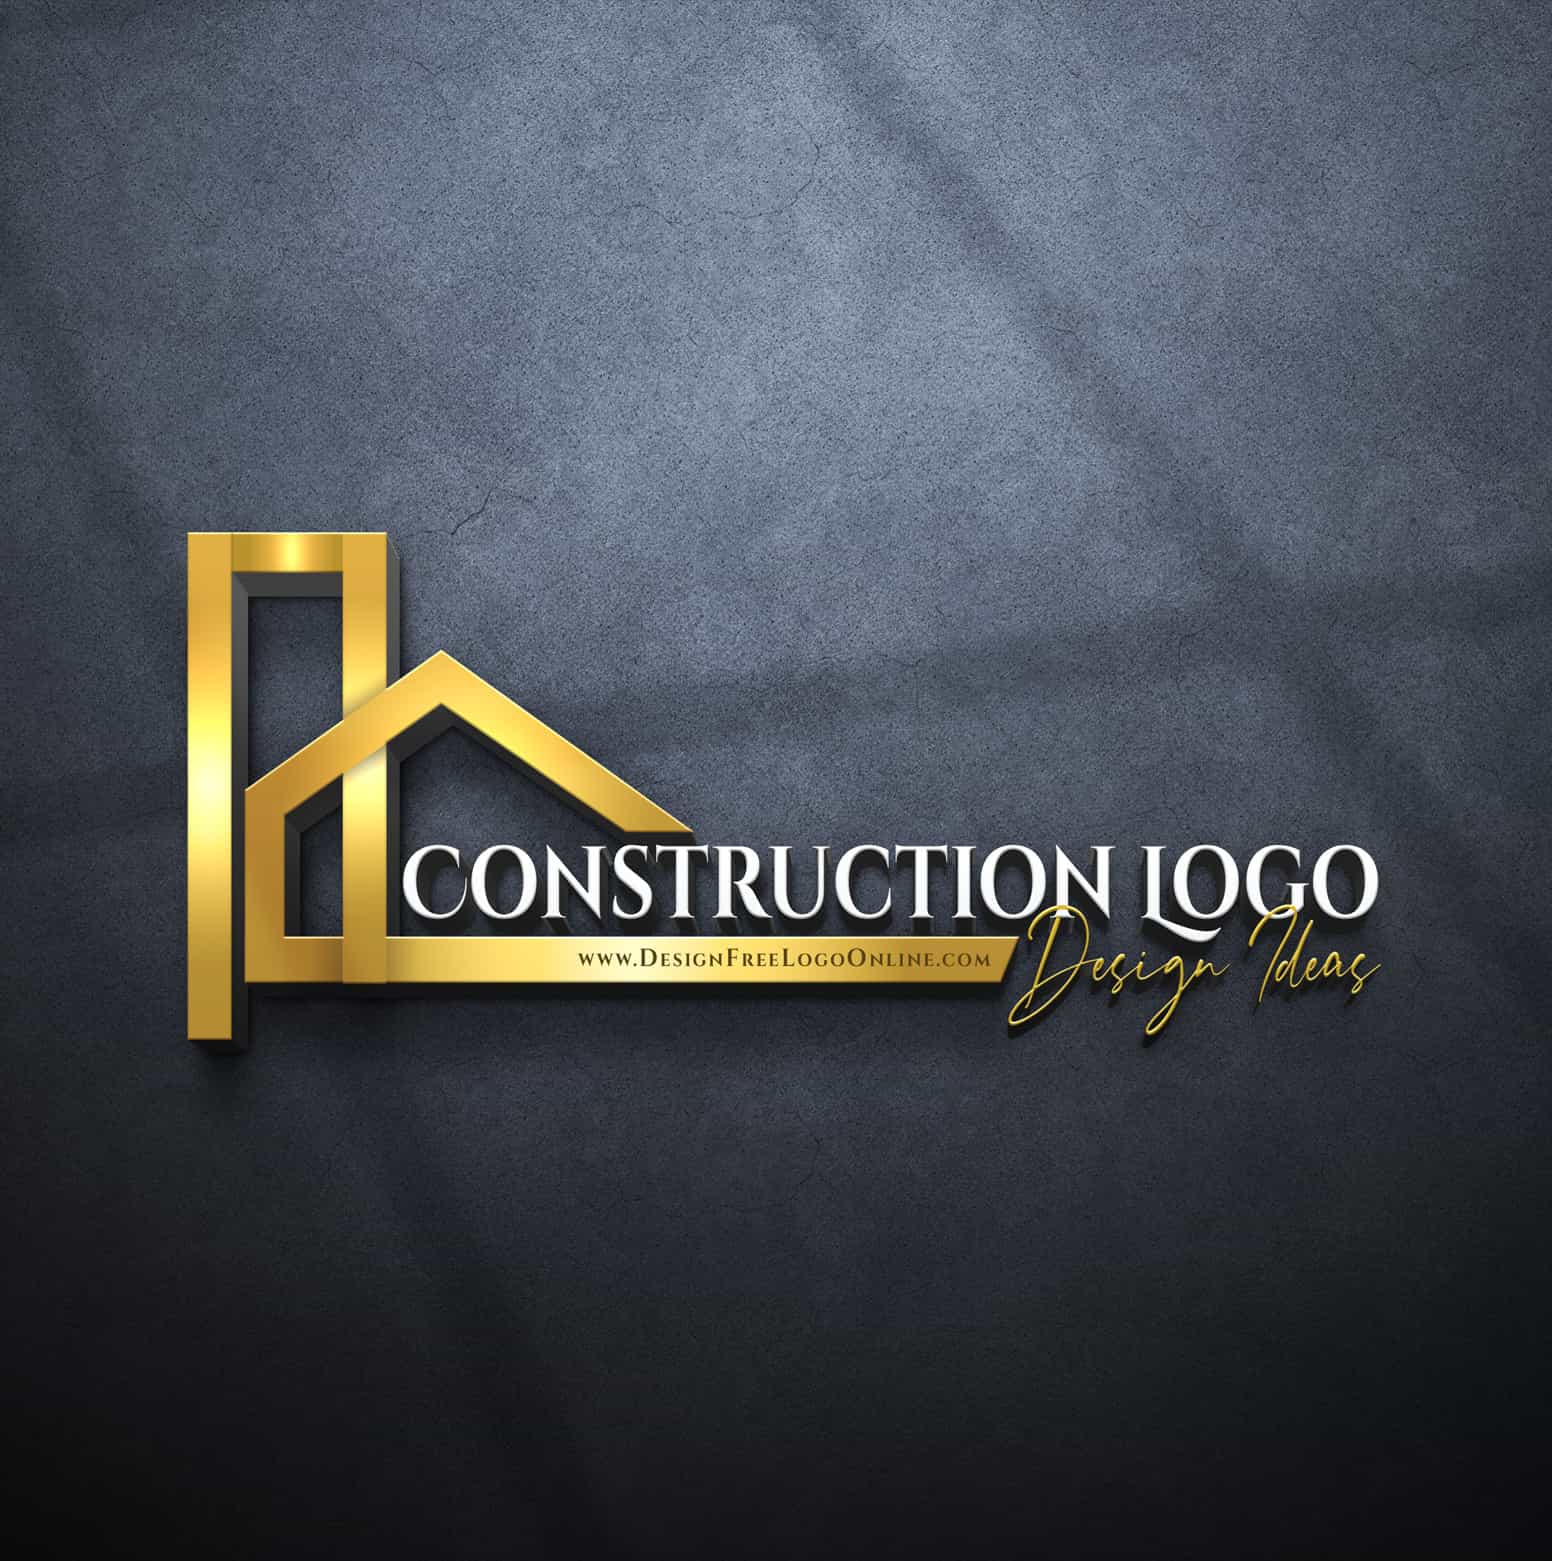 2022 Construction Logo Design Ideas